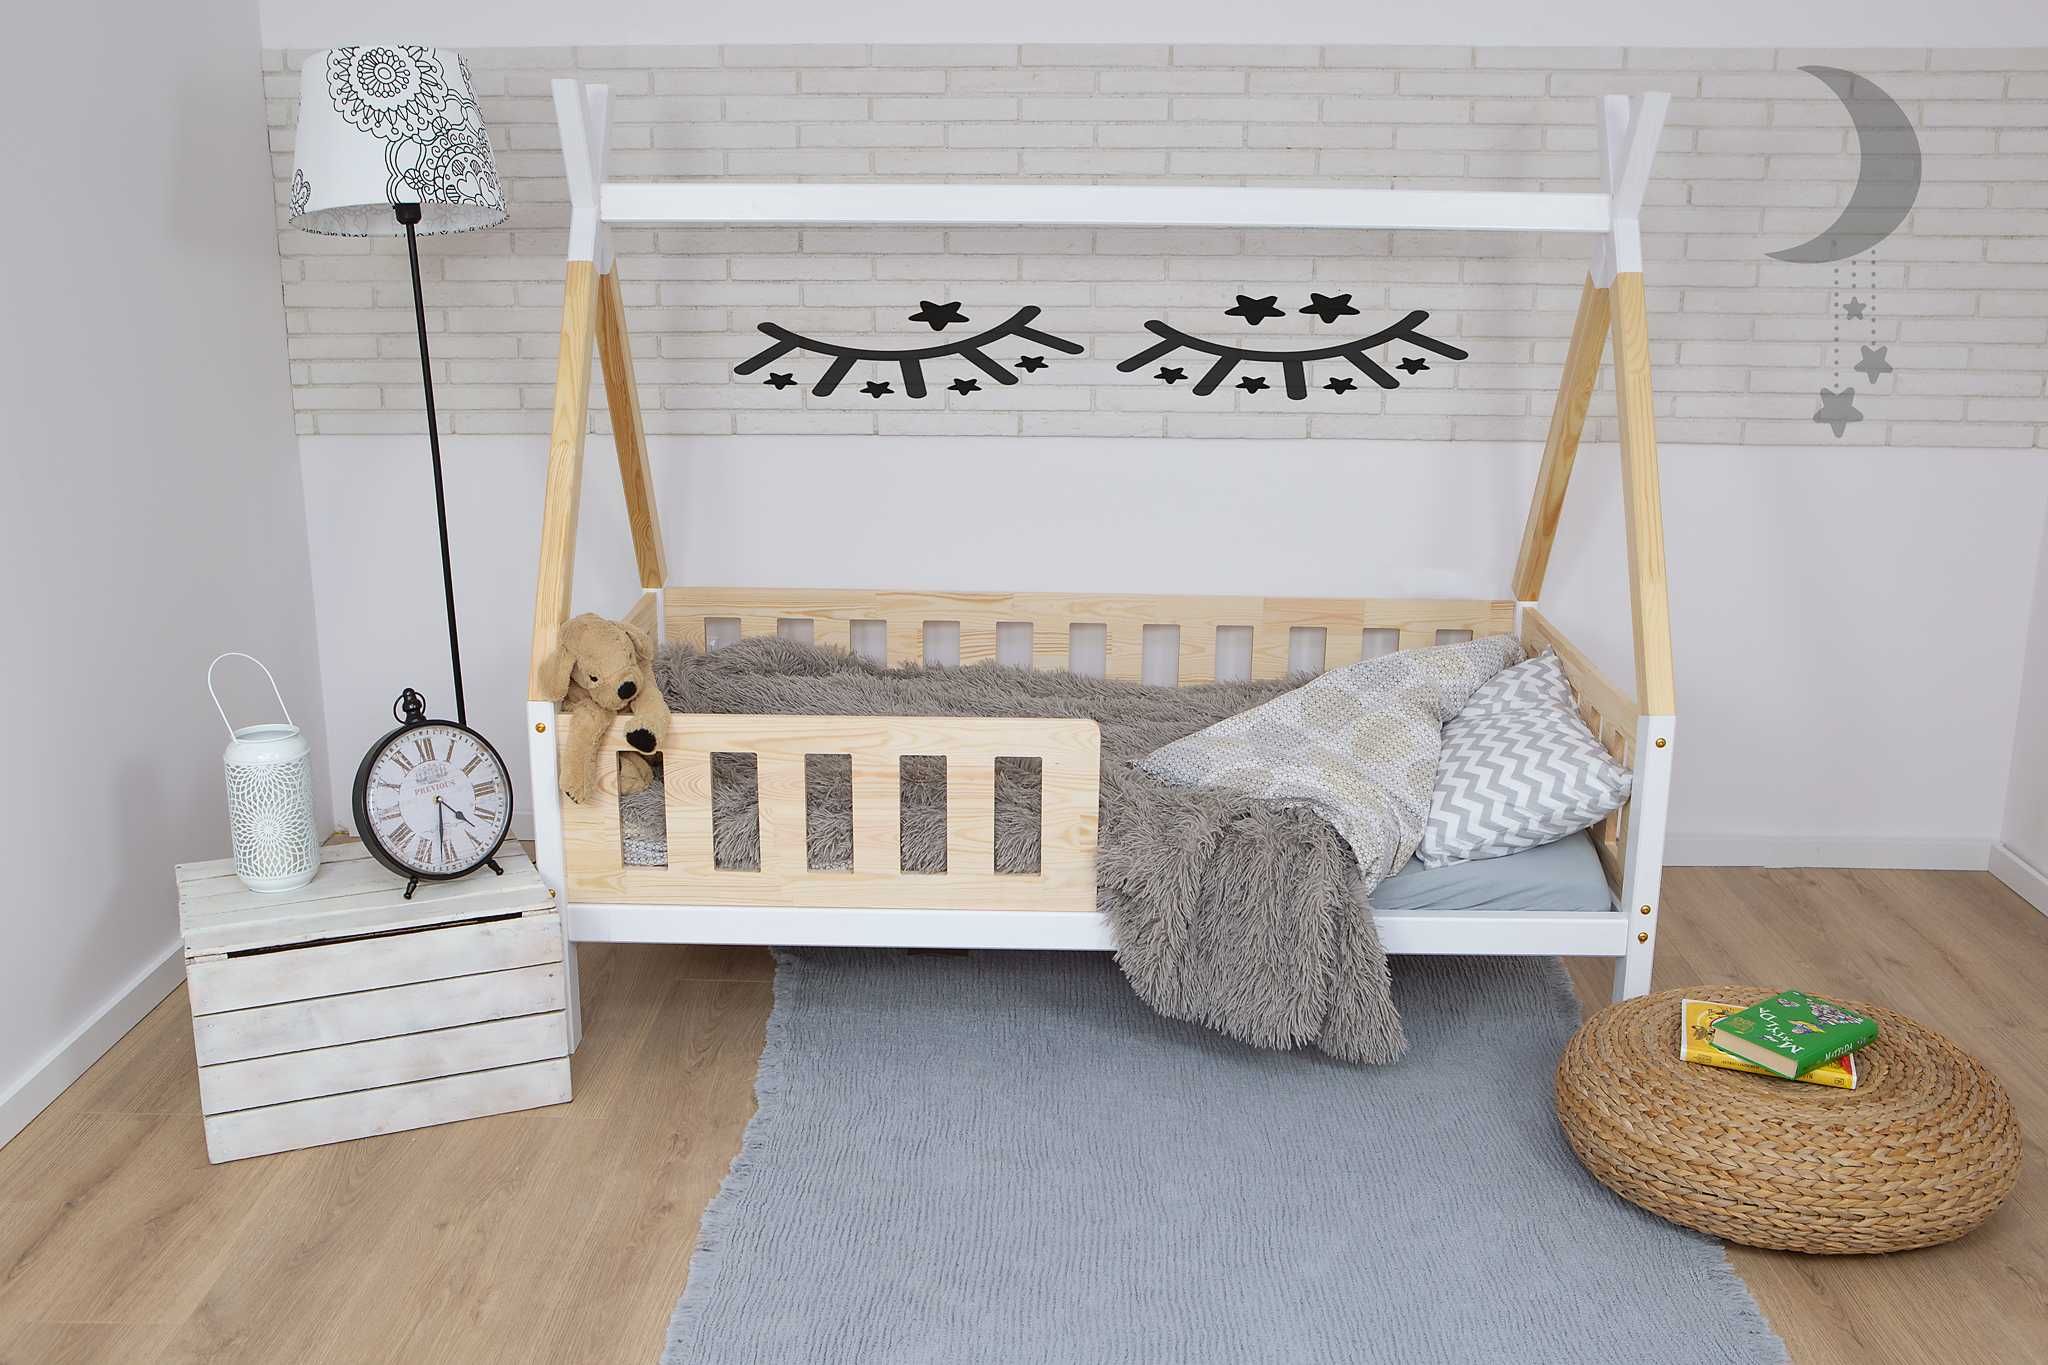 Łóżko dziecięce domek ,Tipi łóżko dla dziecka domek tipi z barierkami